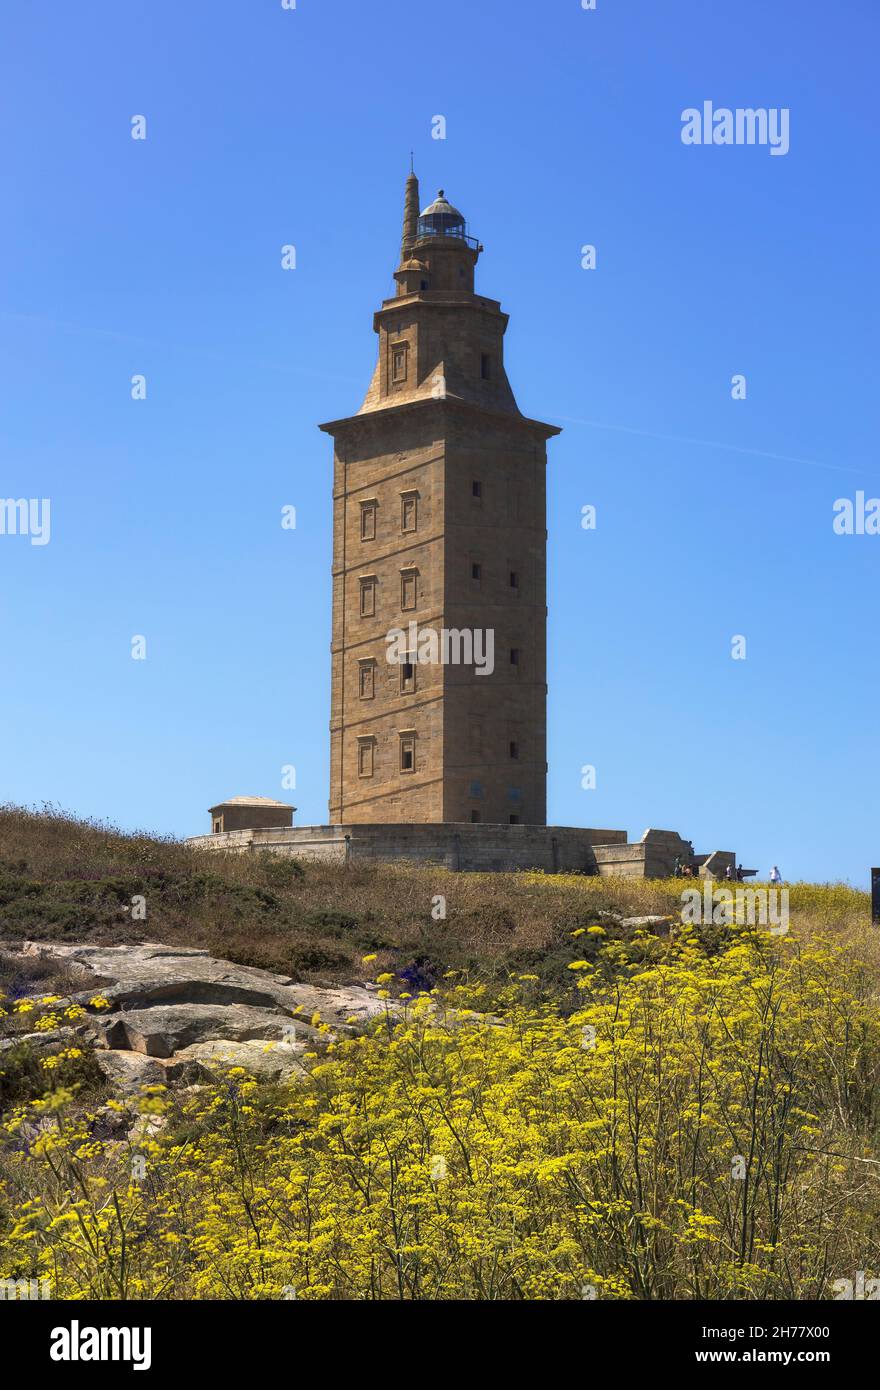 Turm des Herkules in Einem Coruna, Galizien, Spanien Stockfoto